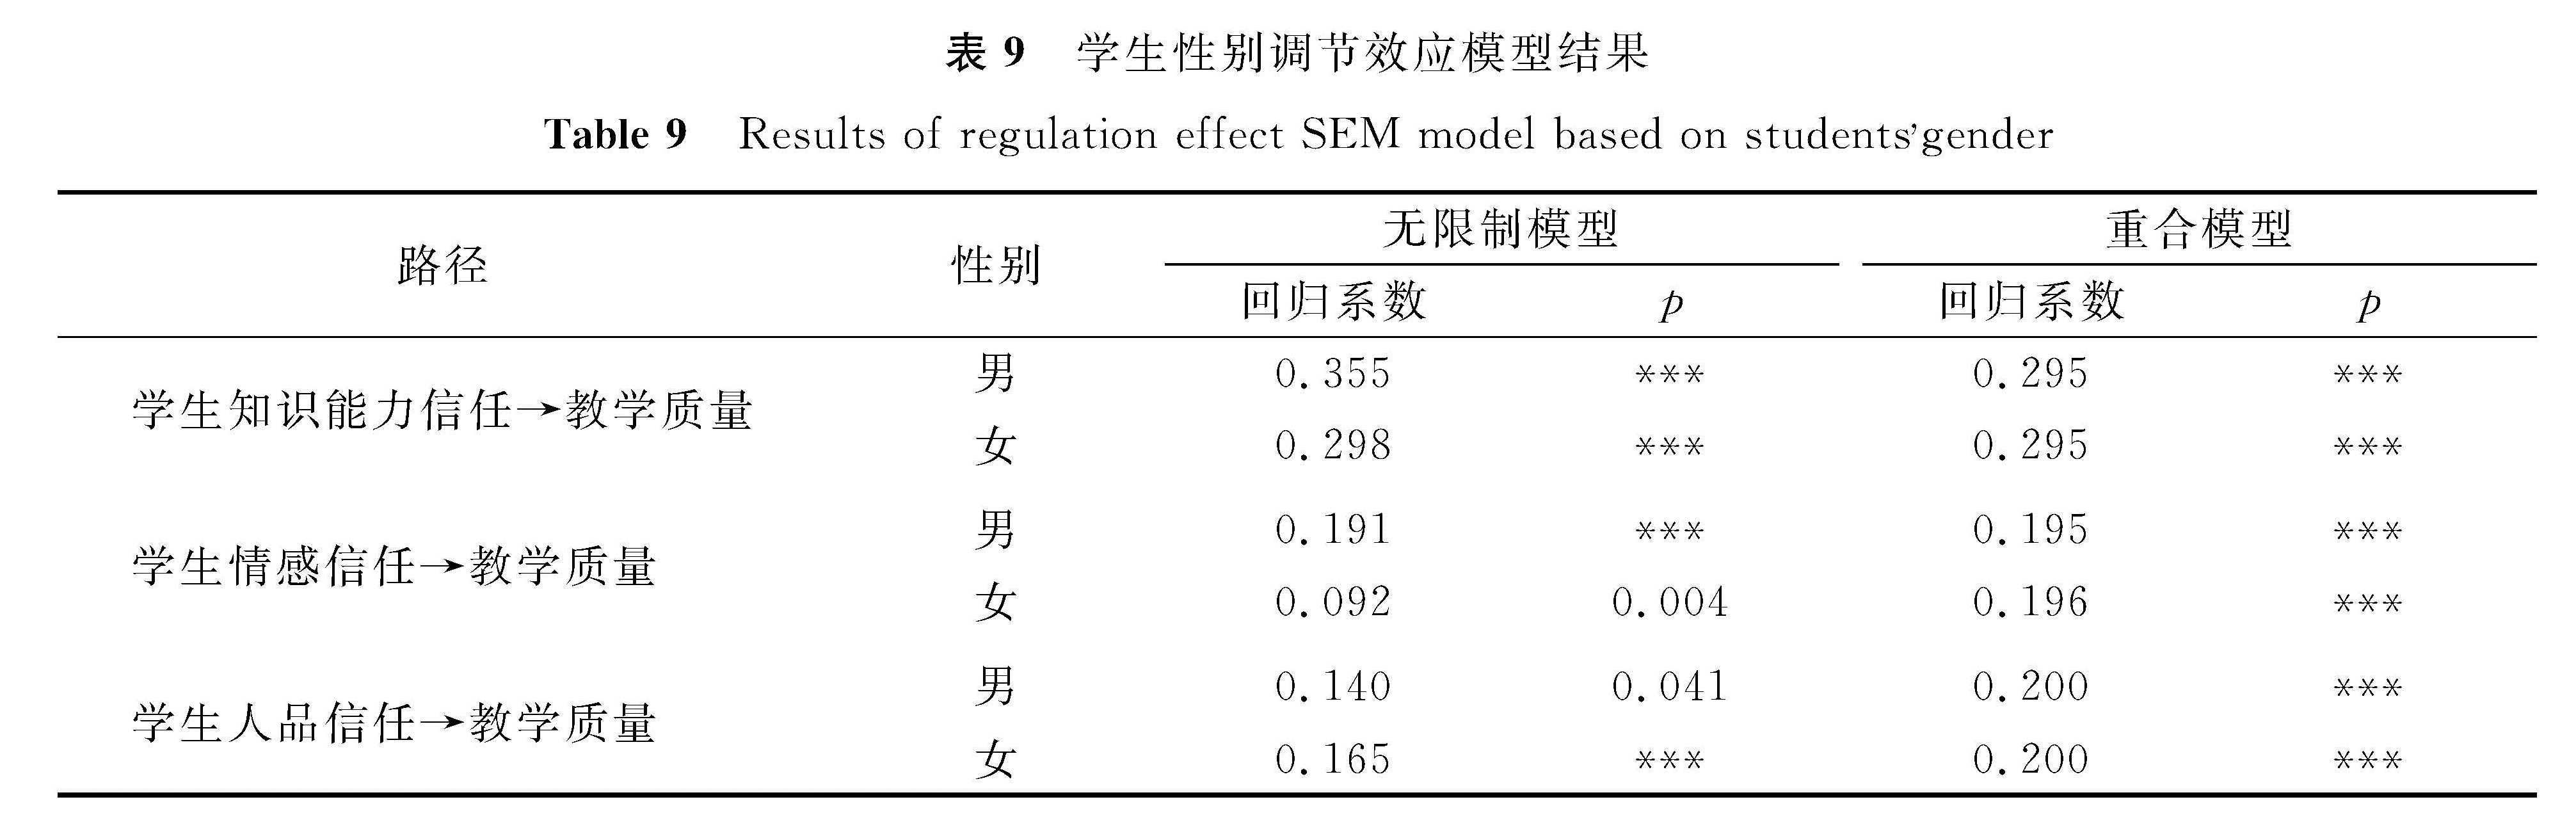 表9 学生性别调节效应模型结果<br/>Table 9 Results of regulation effect SEM model based on studentsgender